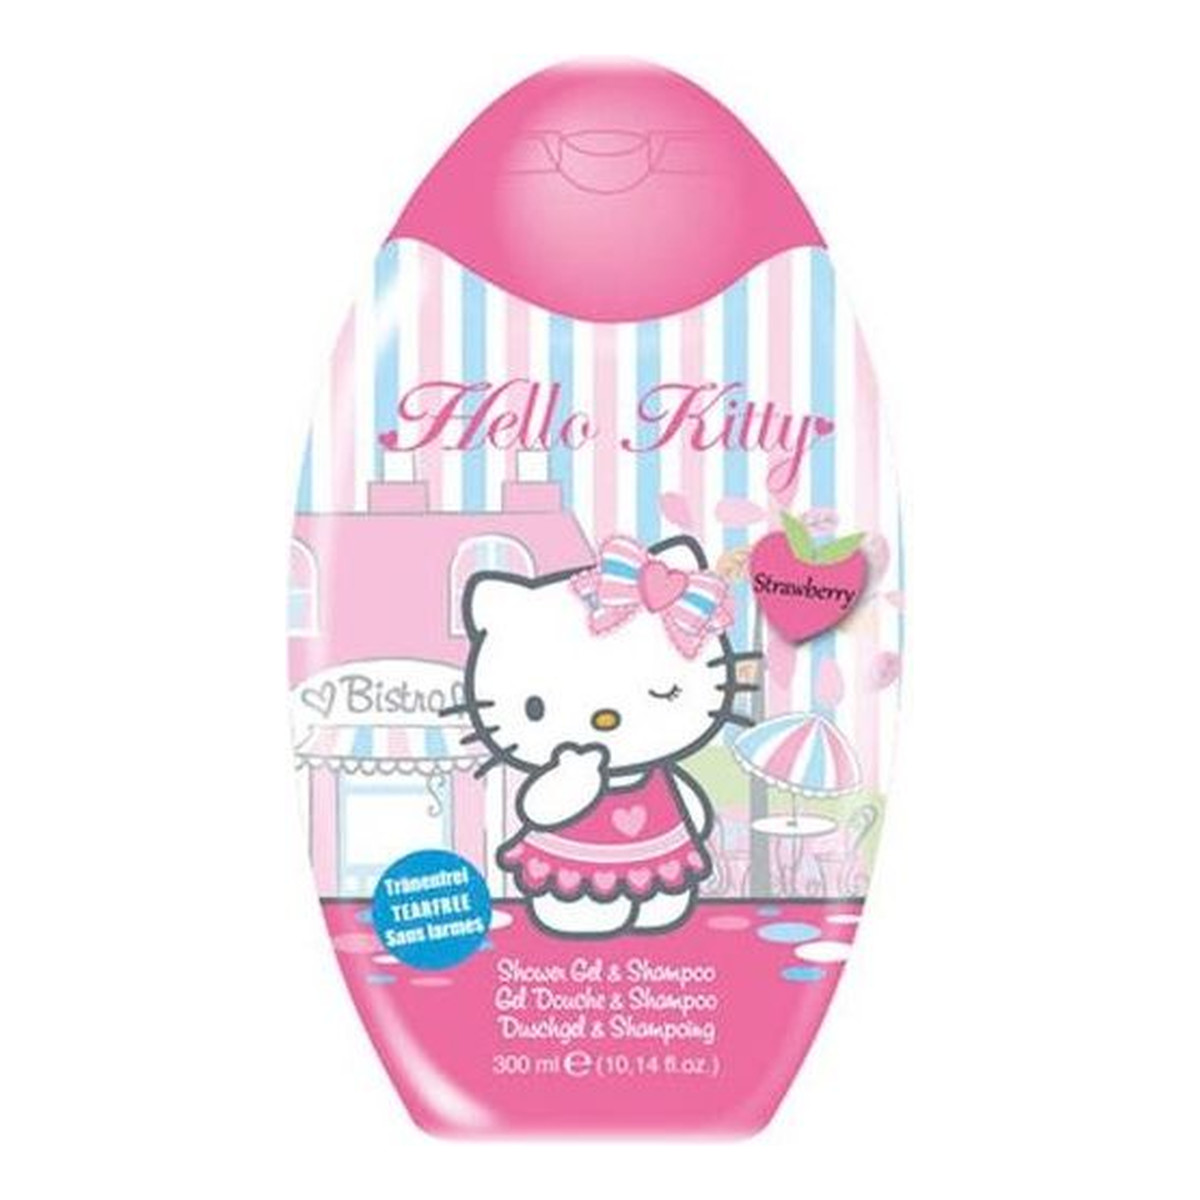 Beauty & Care Hello Kitty 2w1 żel pod prysznic i szampon Raspberry 300ml